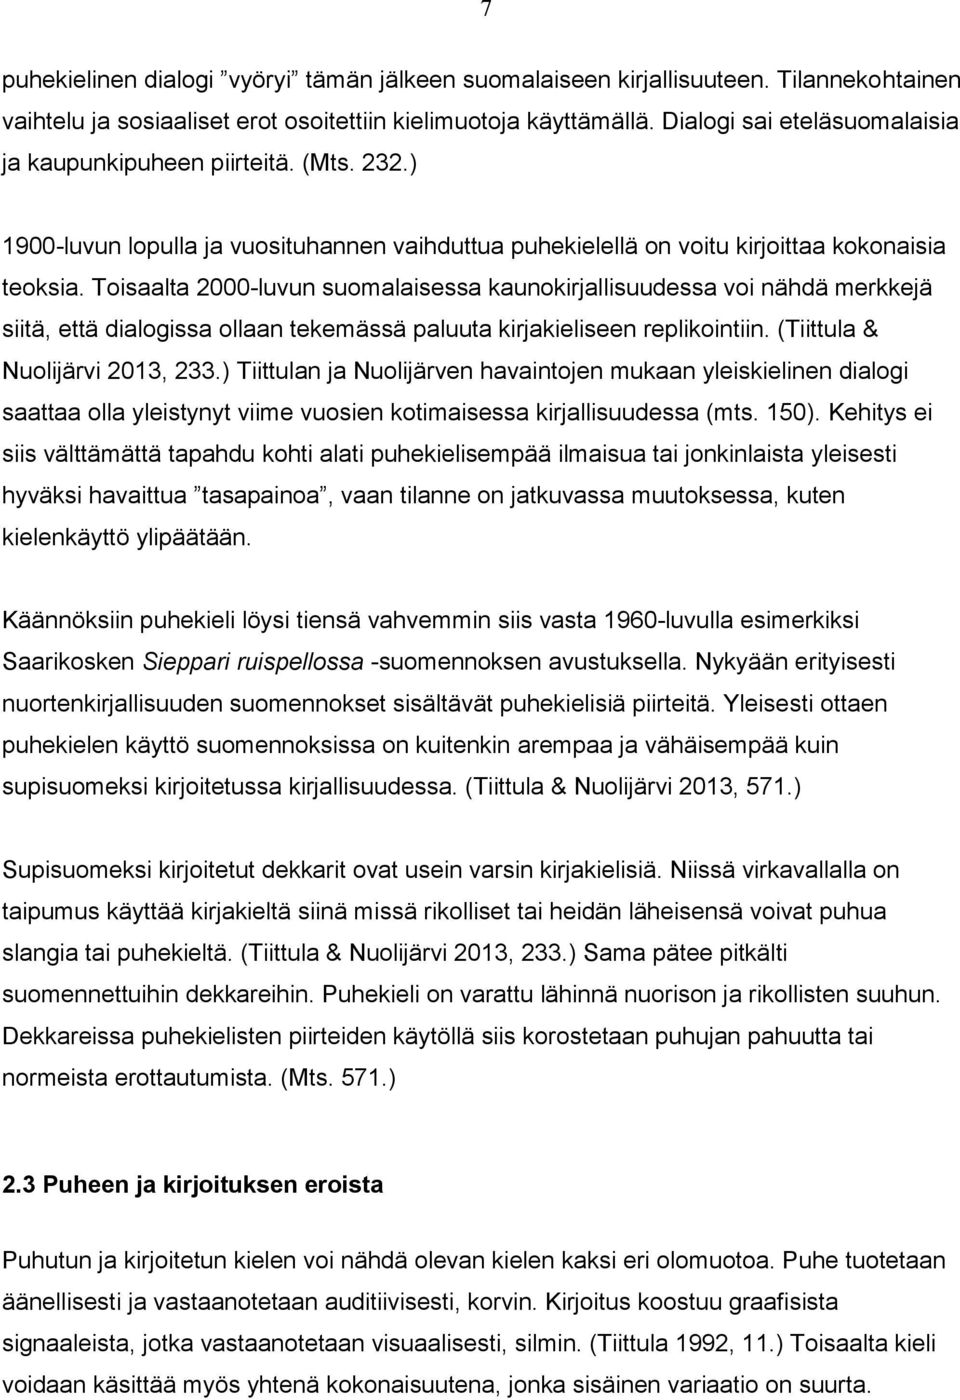 Toisaalta 2000-luvun suomalaisessa kaunokirjallisuudessa voi nähdä merkkejä siitä, että dialogissa ollaan tekemässä paluuta kirjakieliseen replikointiin. (Tiittula & Nuolijärvi 2013, 233.